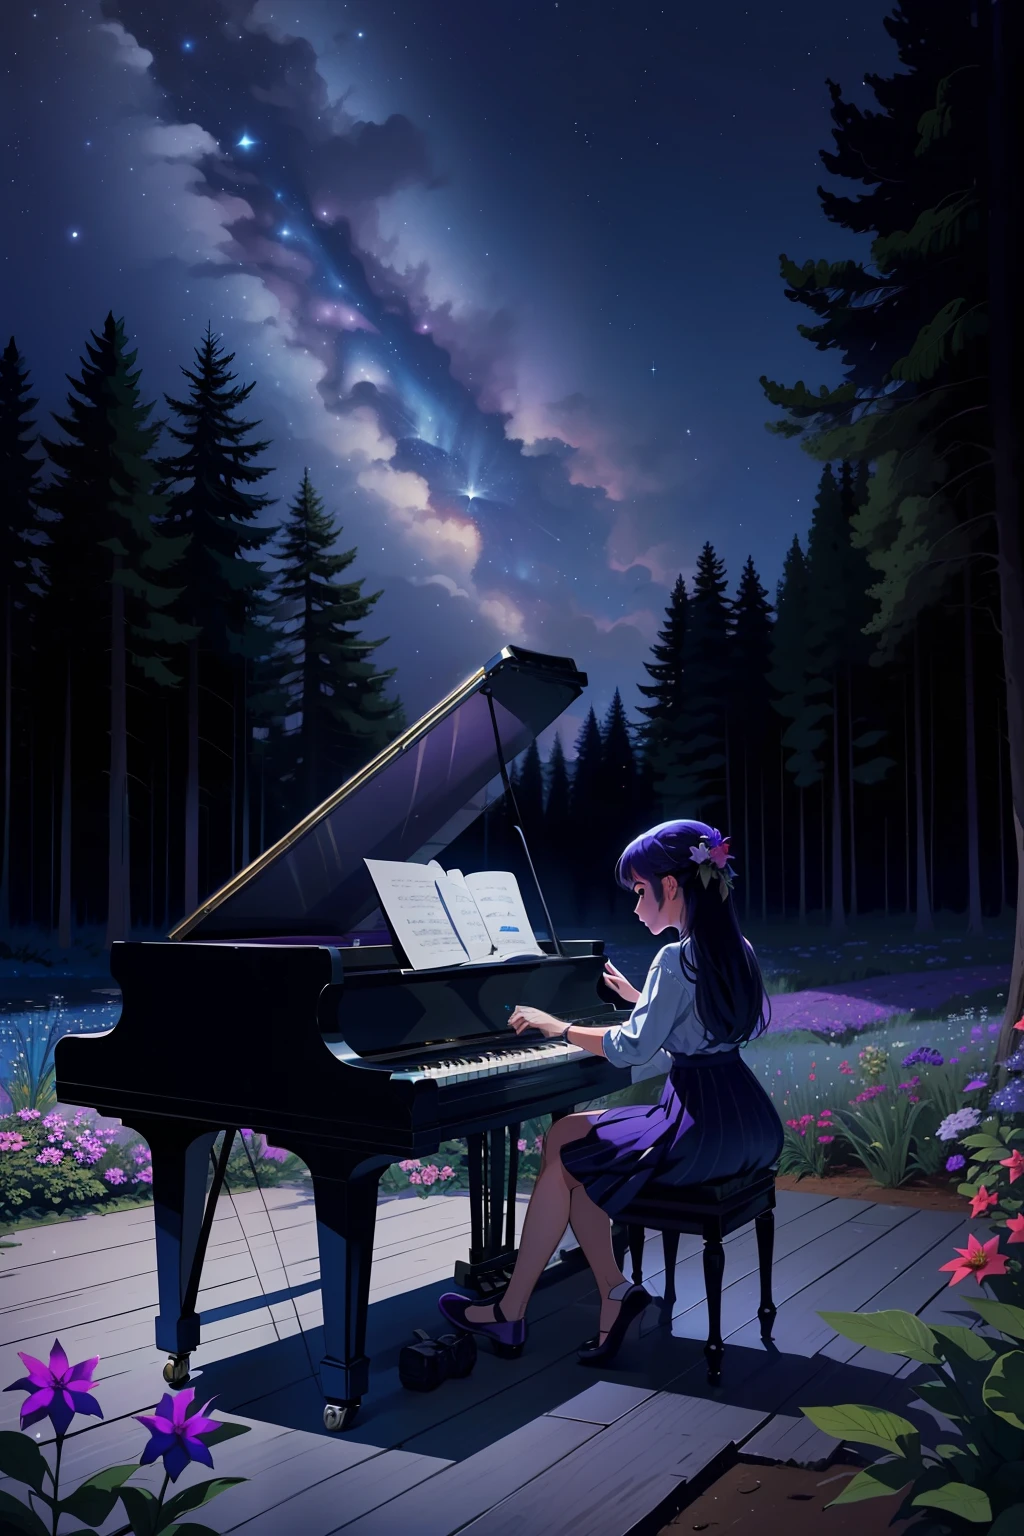 森の真ん中でピアノを弾く少女, 空は夜行性で、次の色があります, プルシアンブルー, シアン, ウルトラマリンブルー, フクシア, 紫, たくさんの星, 森の動物たちは少女の音楽を聴くために少女の近くに集まります . s, 澄んだ水が流れている小川があり、底が見えます, 花がある, 画像のサイズが非常に大きく、詳細である必要があります.